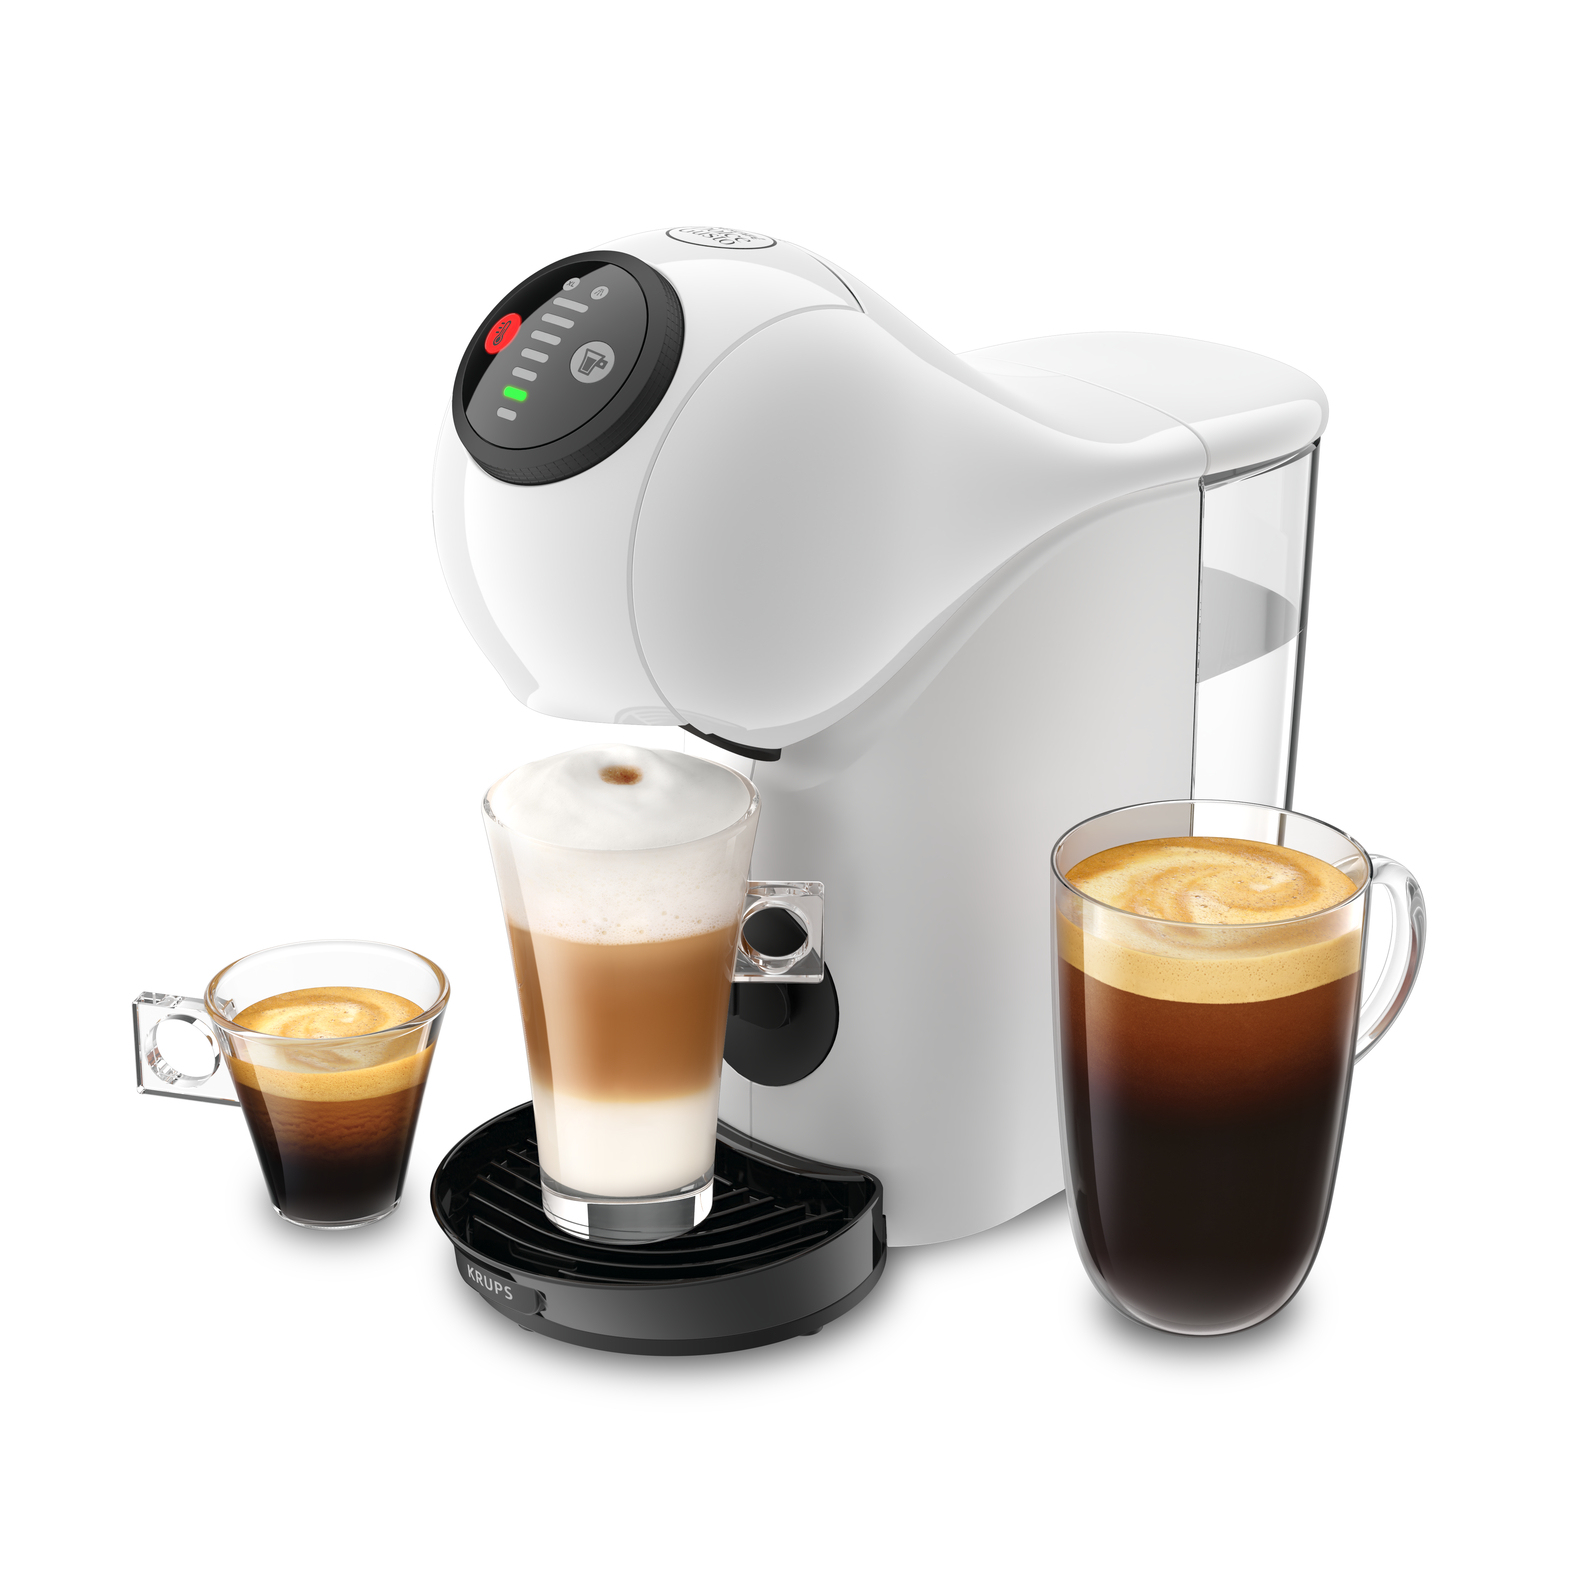 Macchina per caffè Krups KP2401 Automatica/Manuale espresso 0,8 L [KP2401]